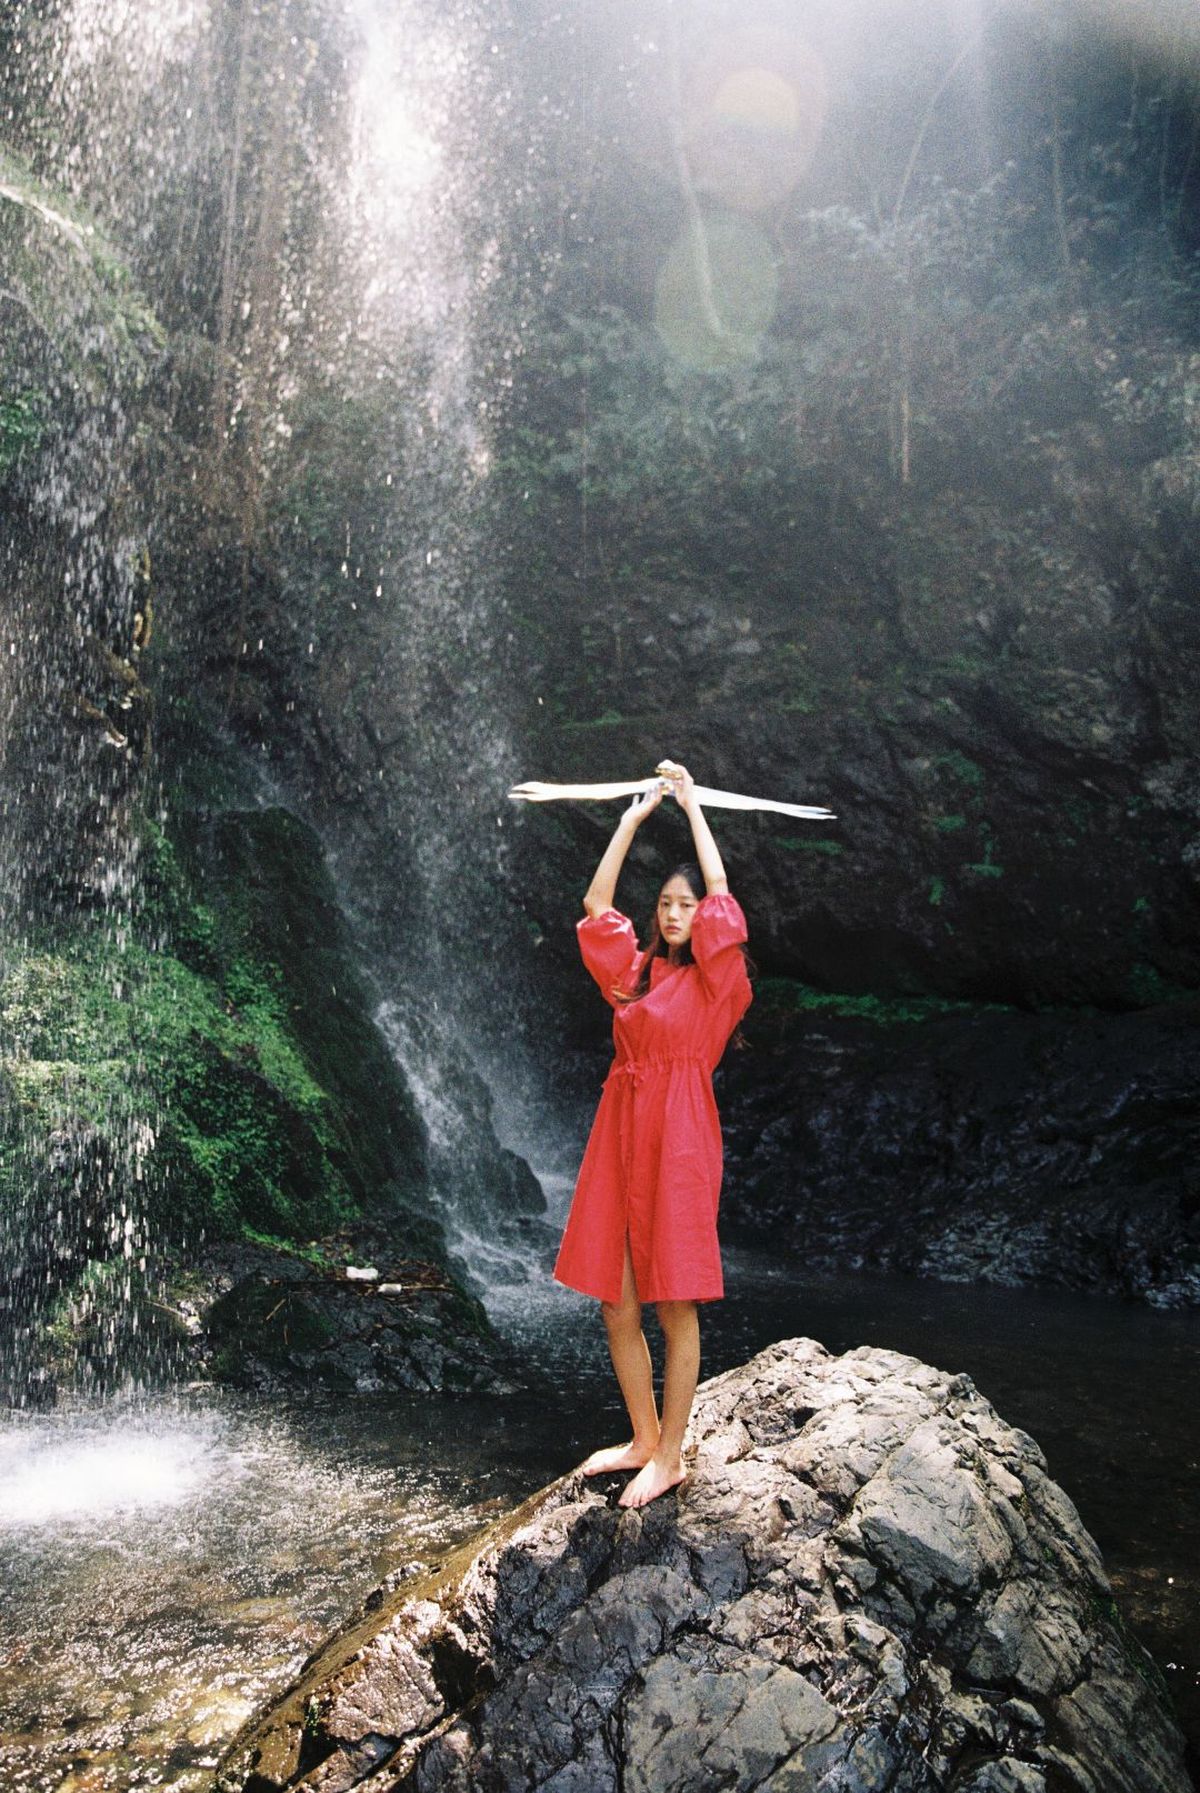 一位穿着红色连衣裙的女孩举着棍子站在瀑布前的岩石上